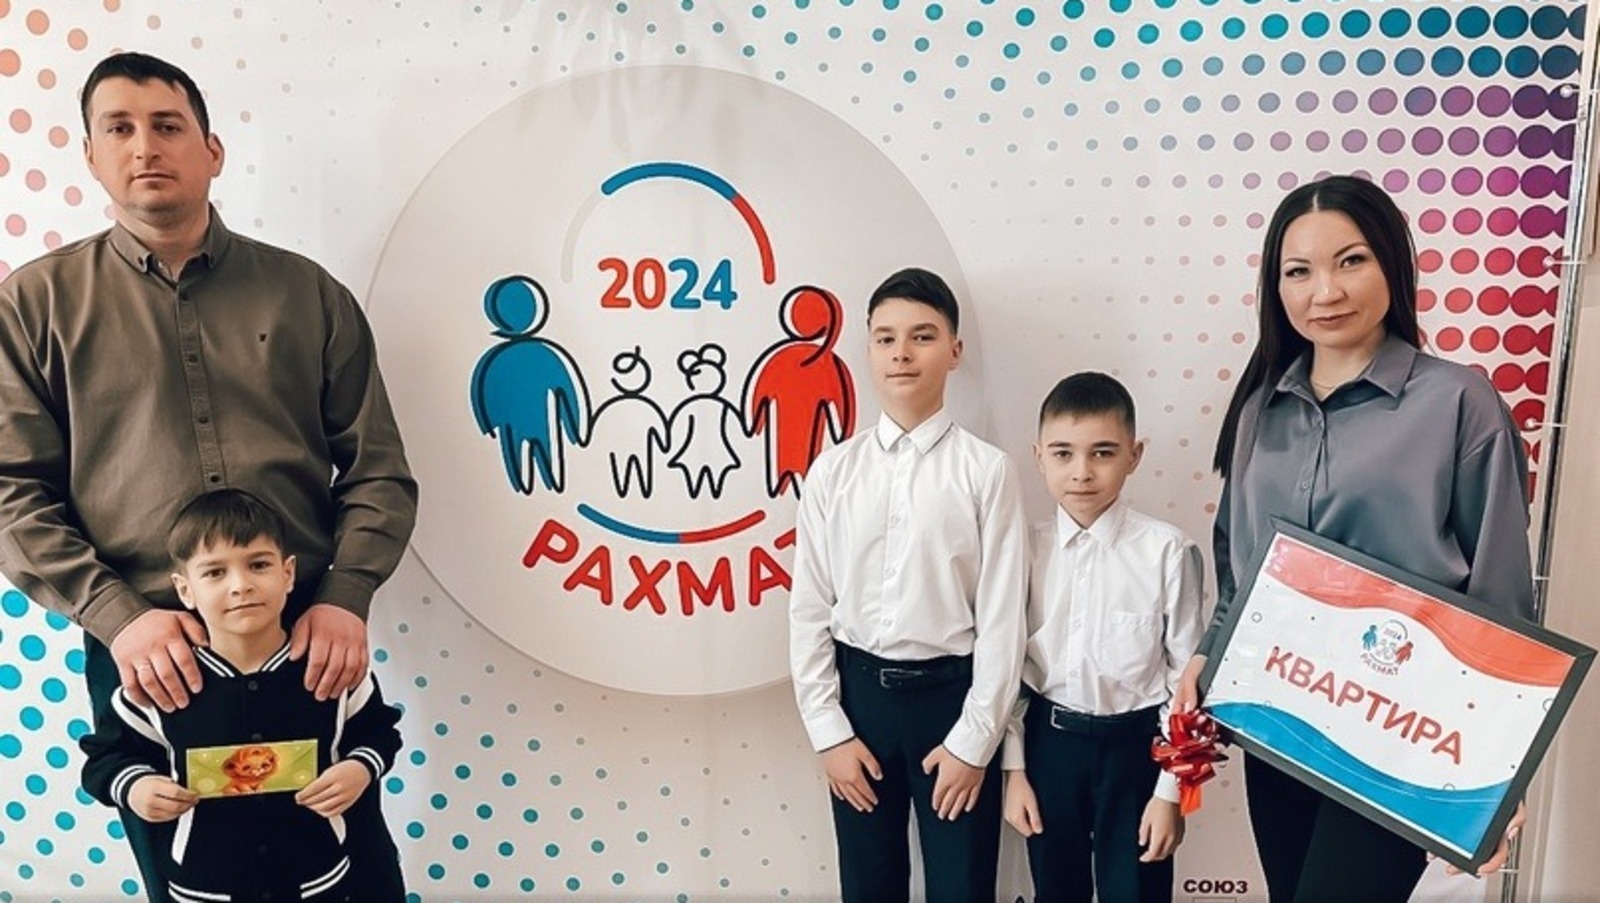 Семья из Башкирии, сходив на выборы, выиграла квартиру